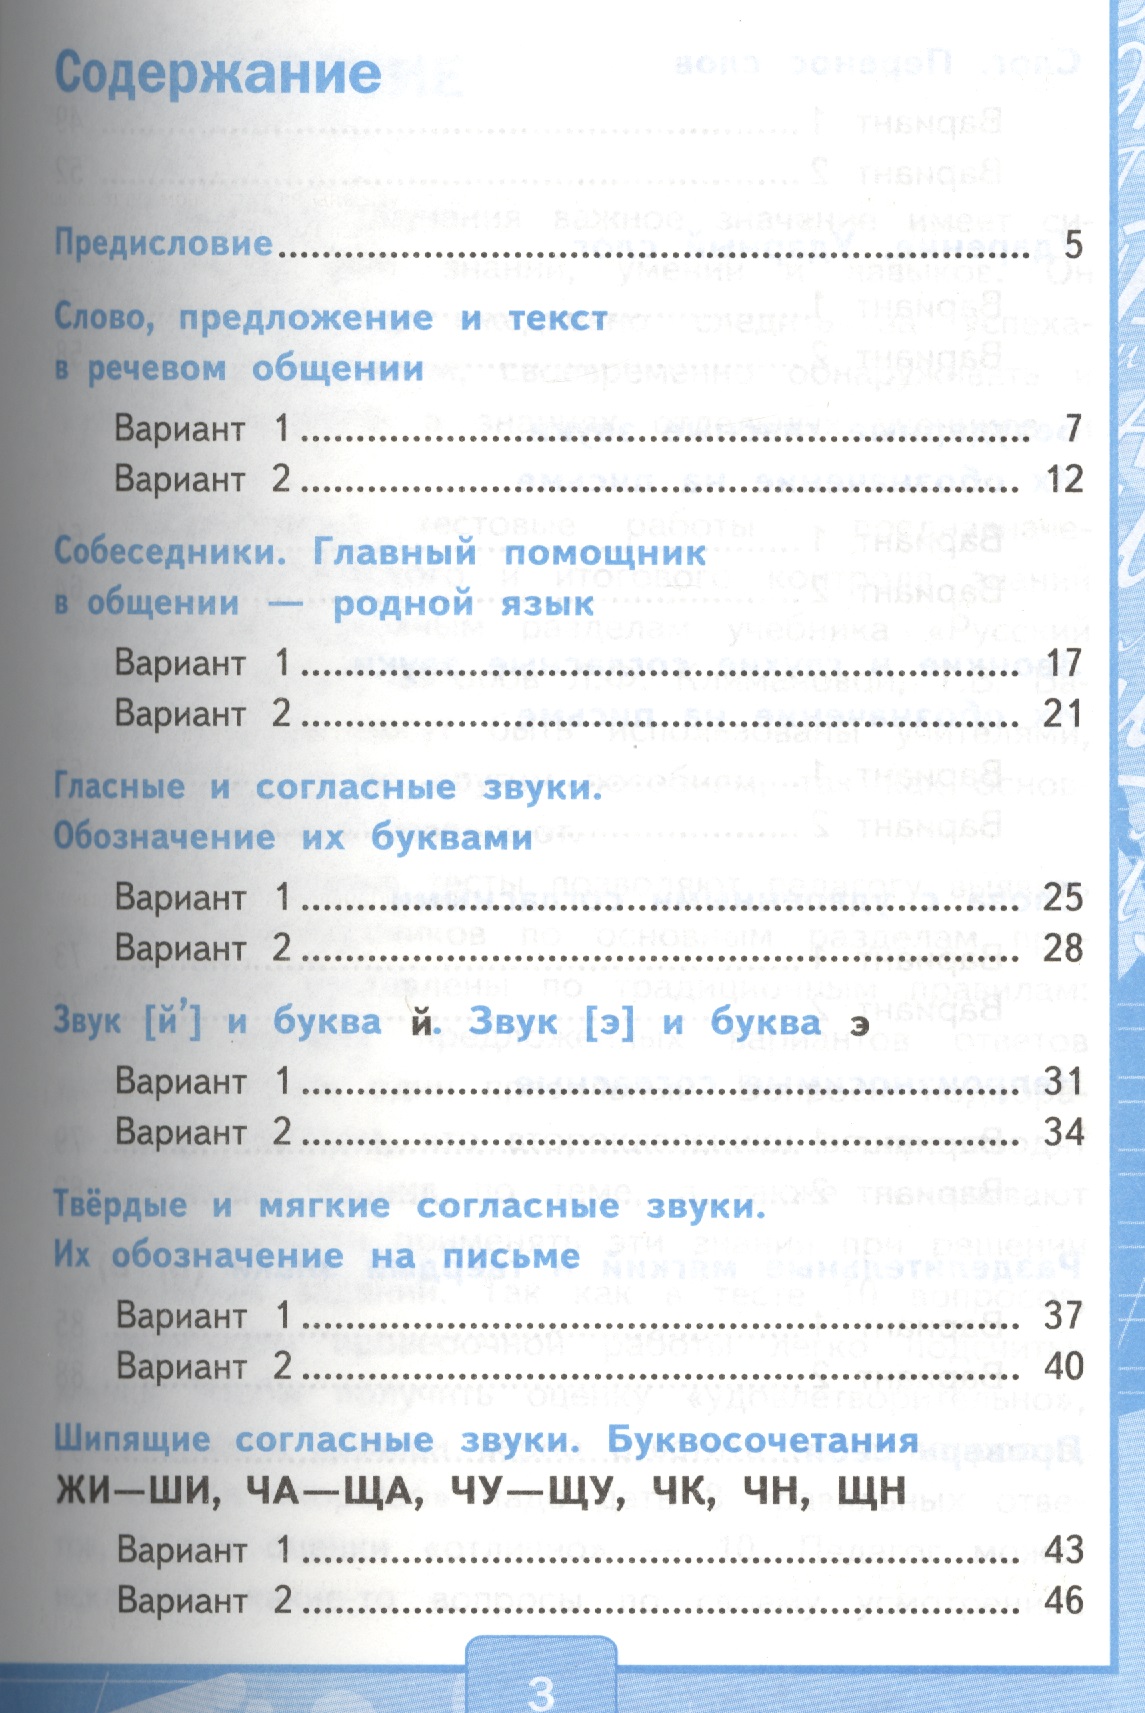 Тест часть 1 автор книгина 5 класс е скачивать русский язык